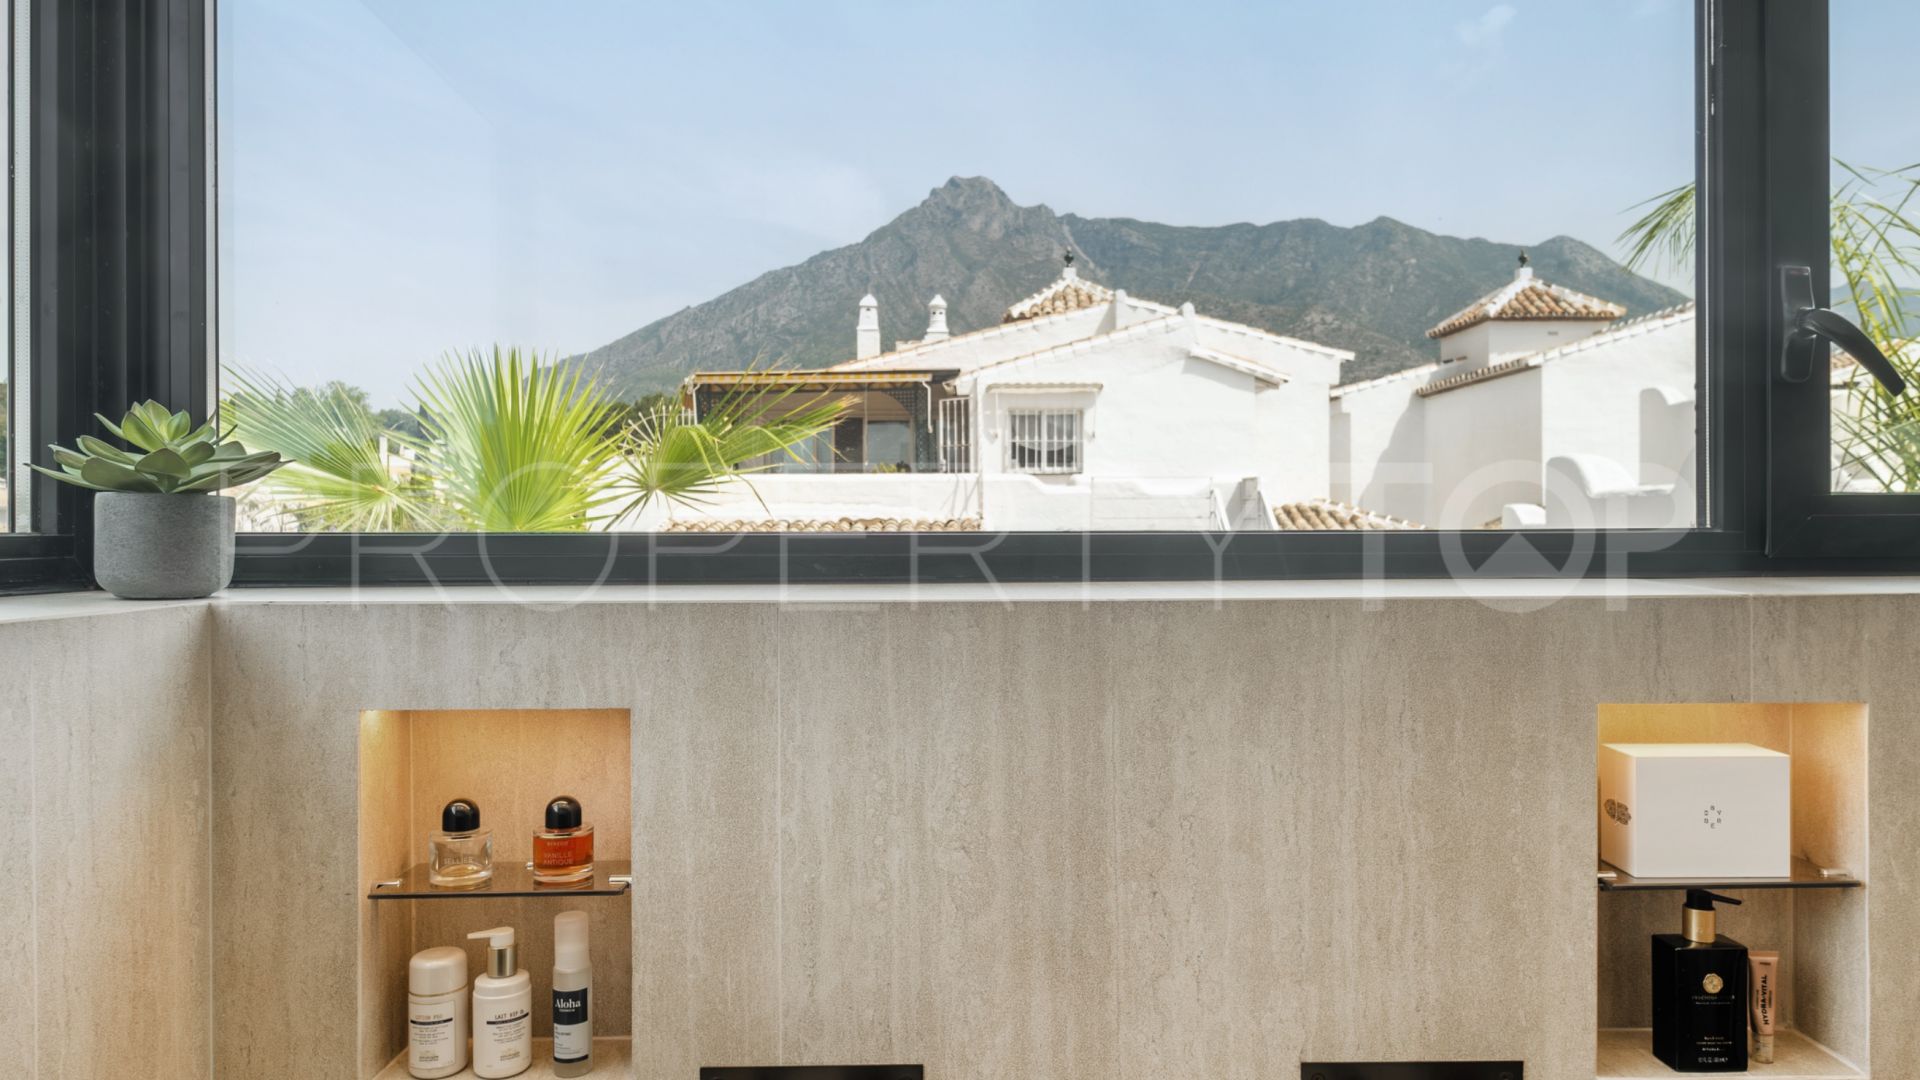 For sale duplex penthouse in Jardines de Sierra Blanca